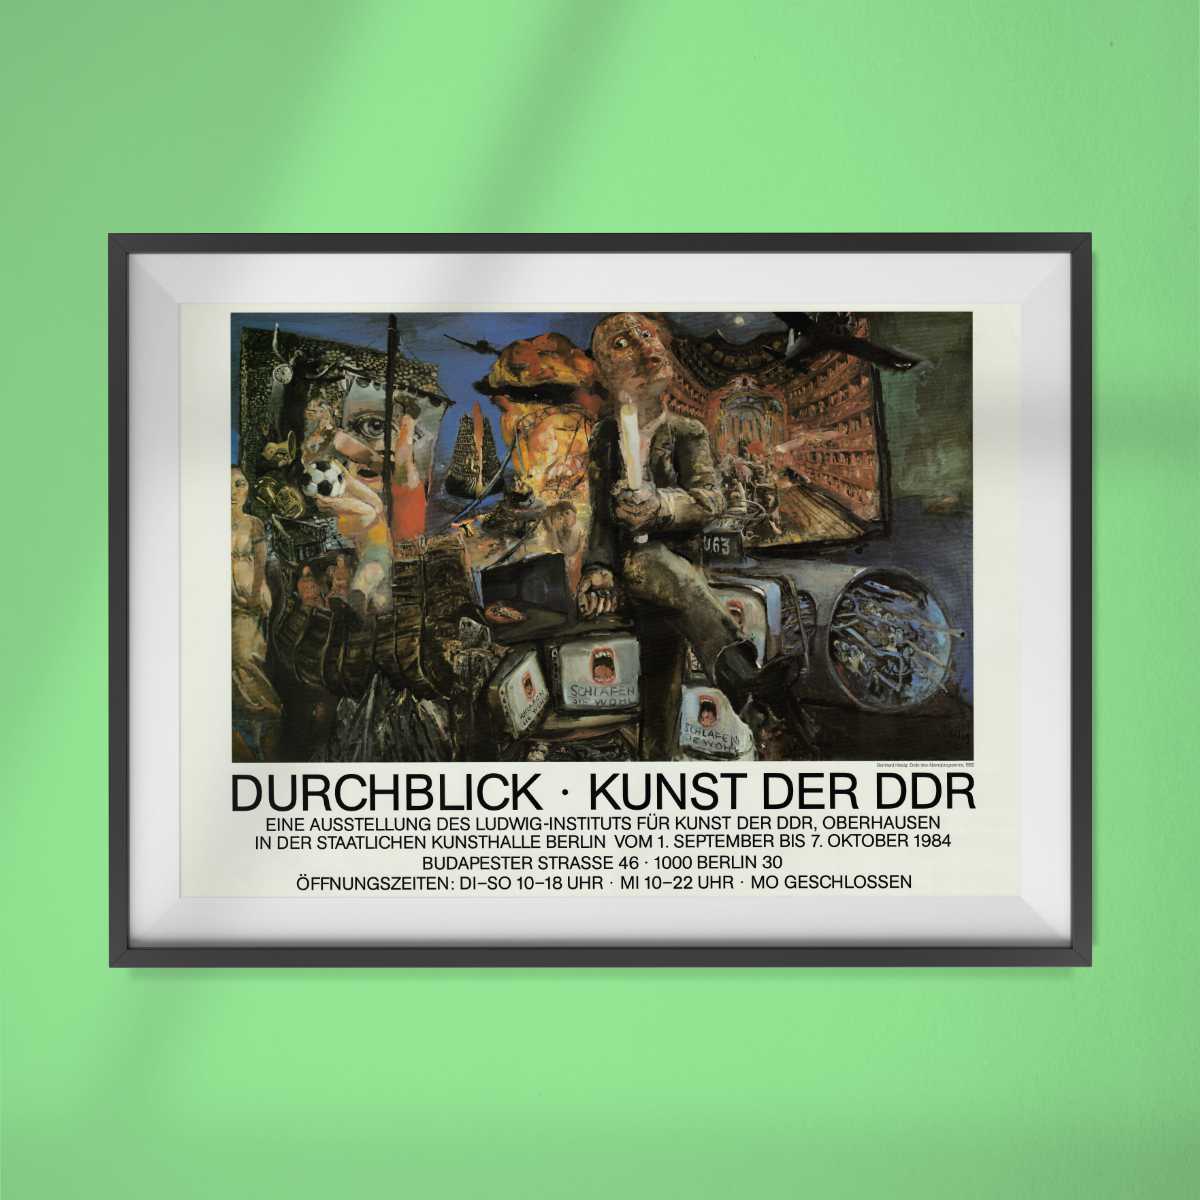 Durchblick - Kunst in der DDR (Staatliche Kunsthalle Berlin)